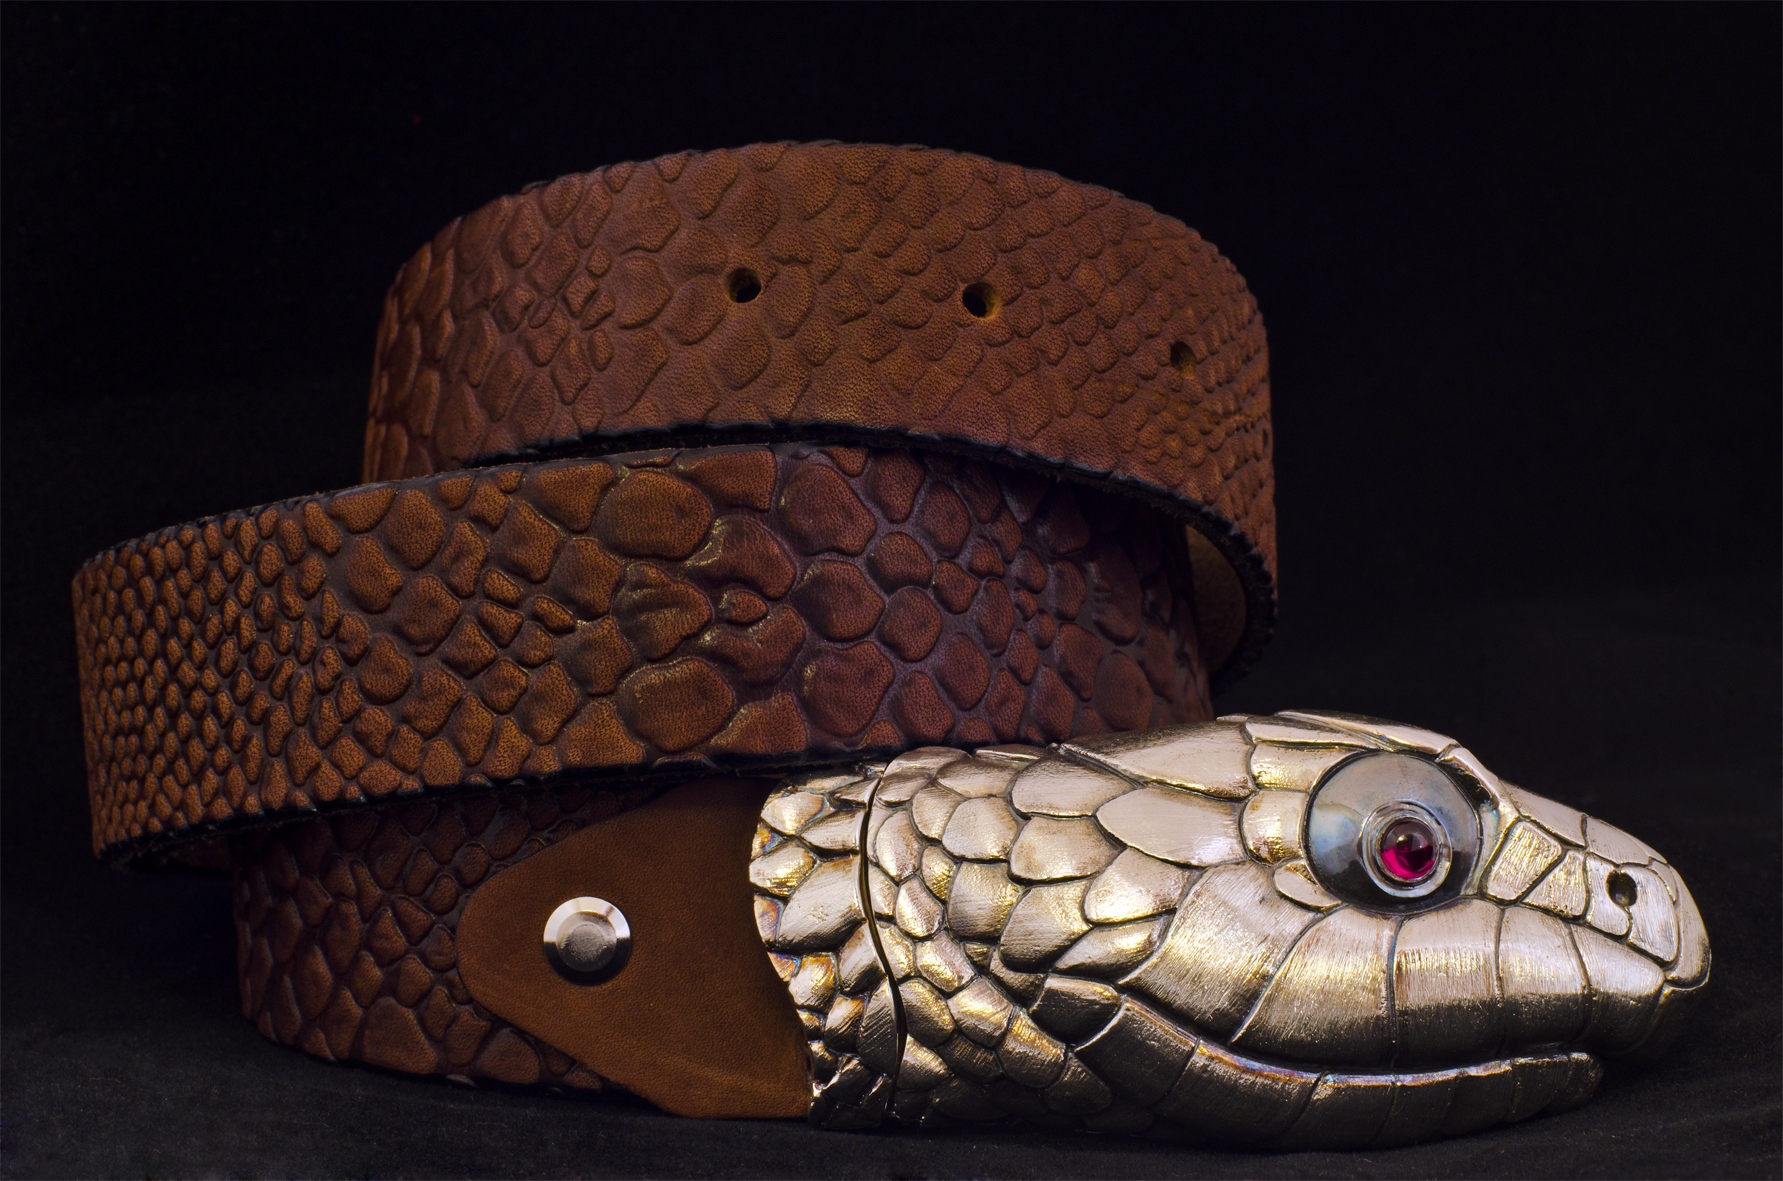 Ремень с пряжкой змея. Пояс из змеи с головой натуральный. Ремешок змея садовок ВК. Пряжка для ремня змей в форме восьмерки.